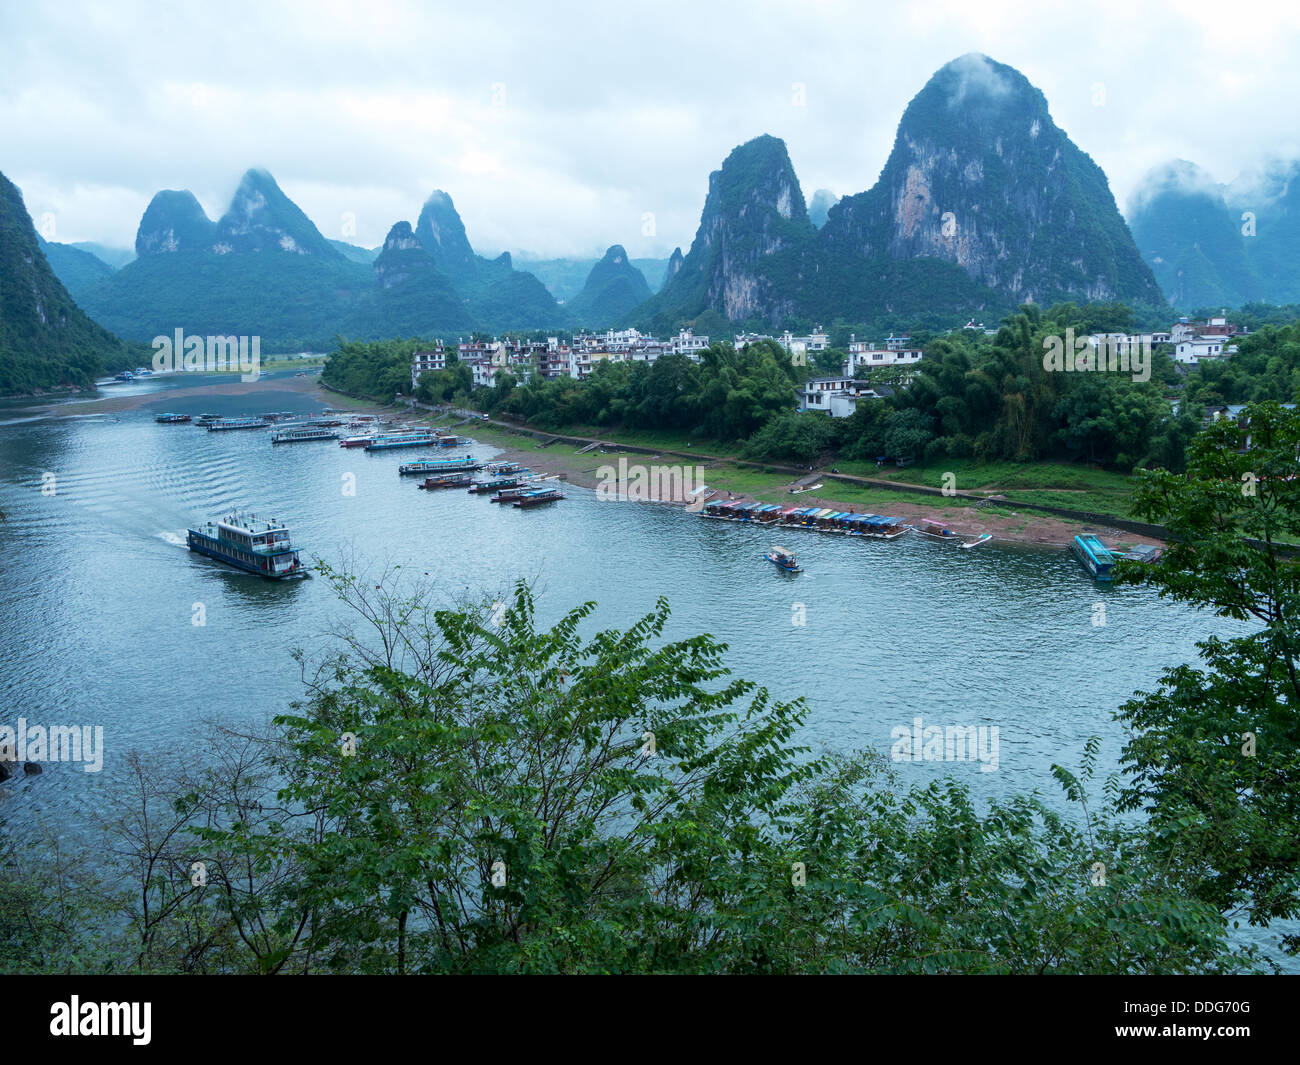 The Lijiang River landscape in Xingping, Yangshuo, Guilin,Guangxi, China Stock Photo